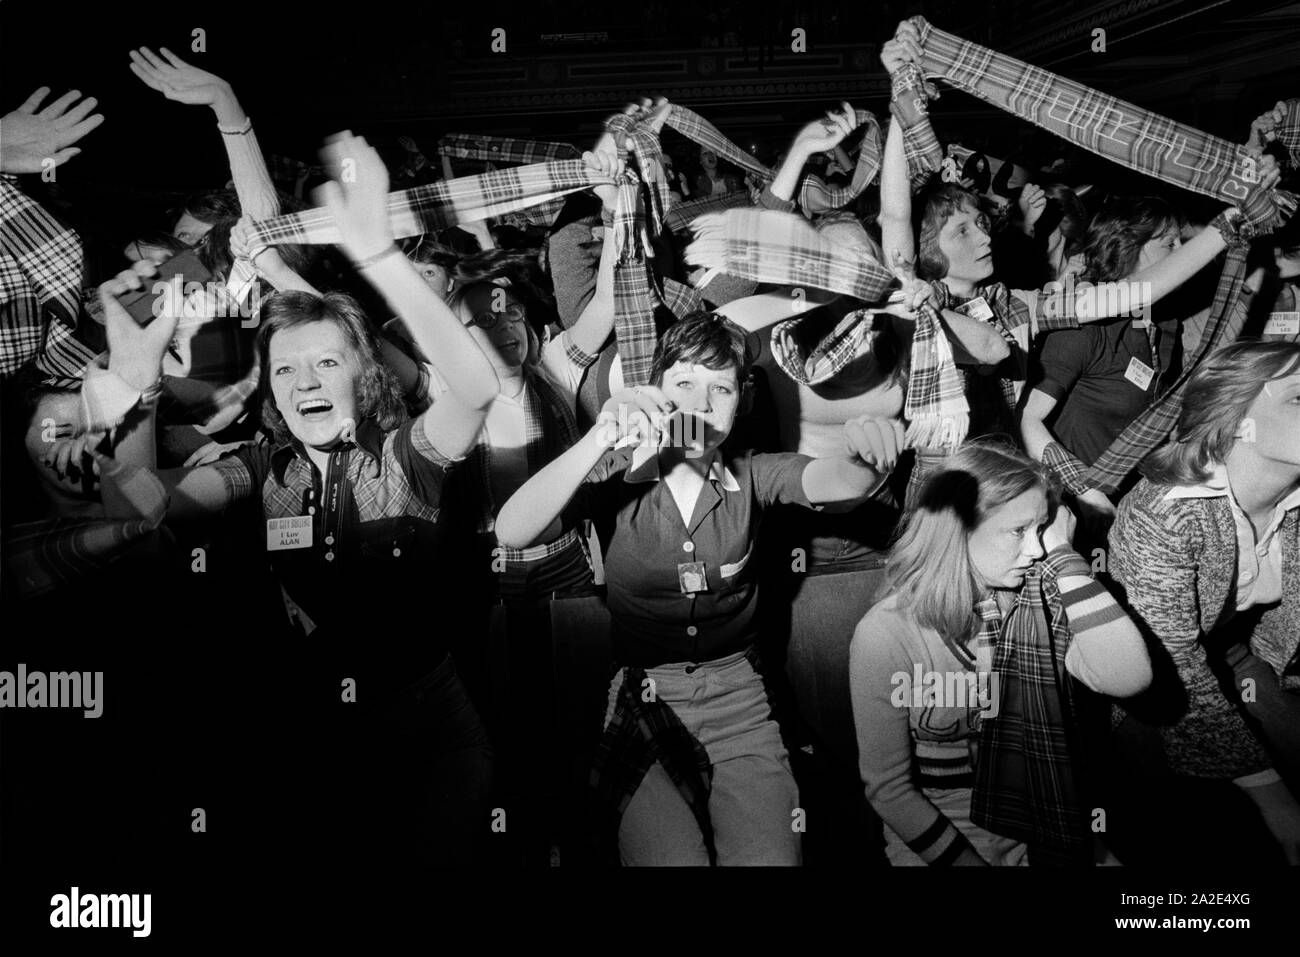 Bay City Rollers pop group, un boys band des années 1970. Fans hystériques d'adolescente hurlant et agitant des écharpes tartan. Le tartan était le style de mode promu par les Rollers. Newcastle Royaume-Uni années 1970 HOMER SYKES. Banque D'Images